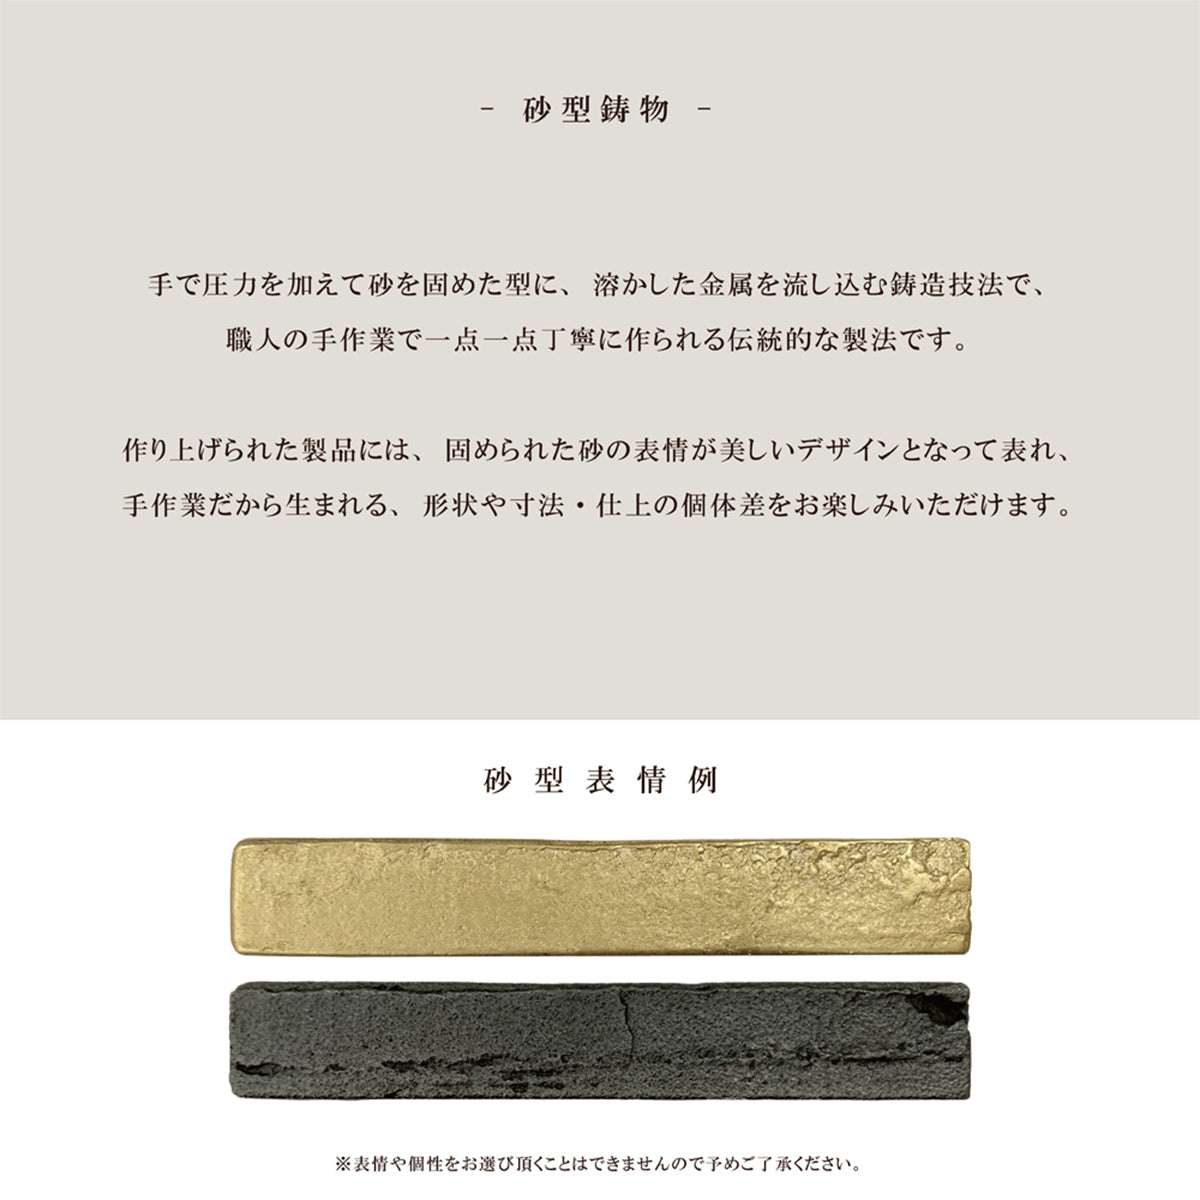 Brass Casting 真鍮鋳物 タオル掛け (T型 真鍮色 BT-200)